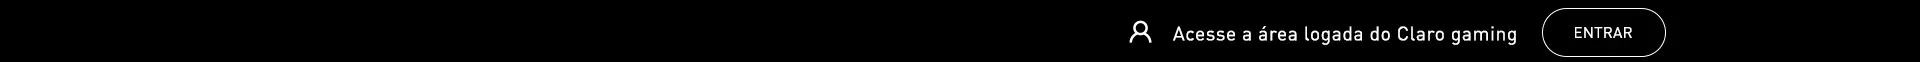 Imagem de um ícone com três círculos entrelaçando.